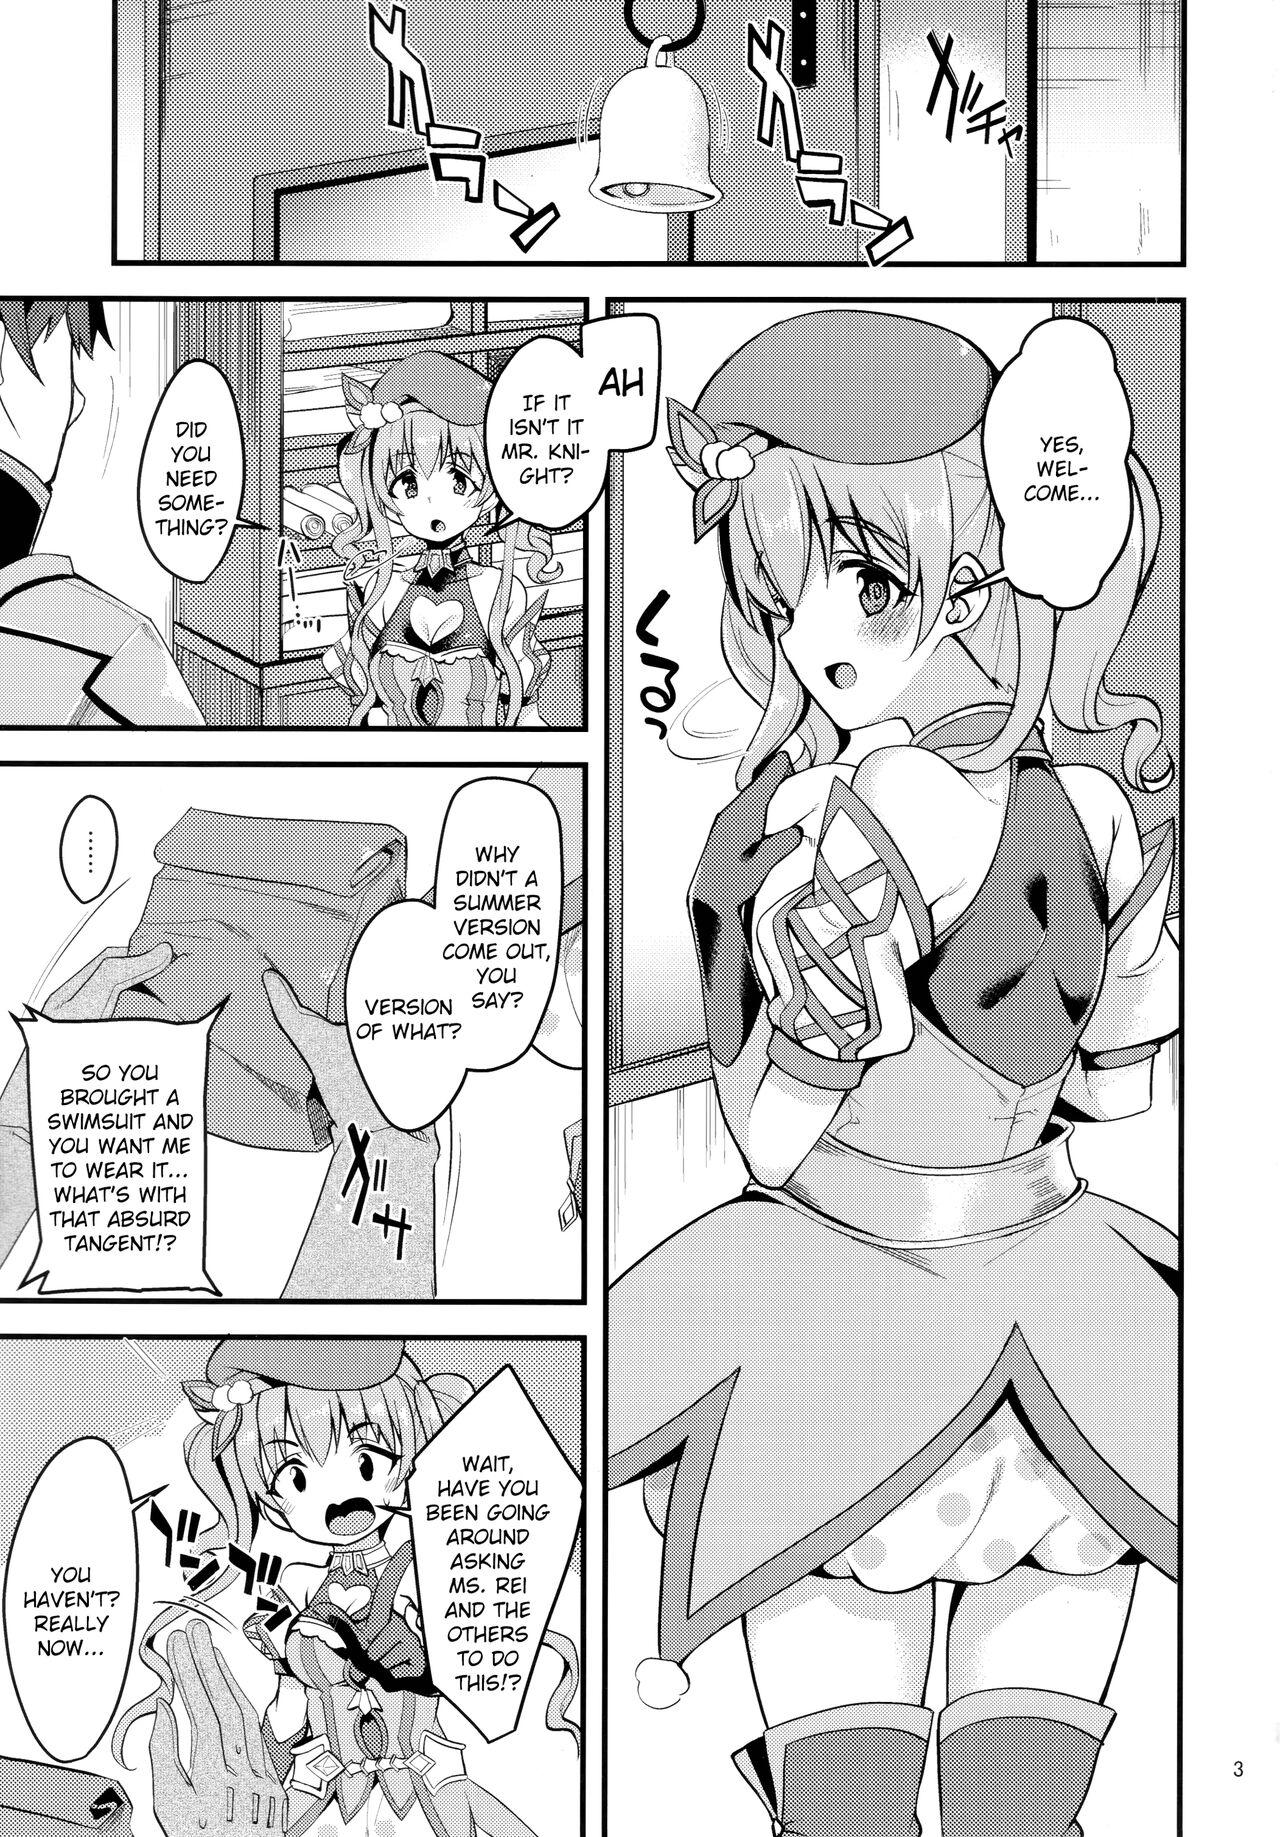 Mature Tsumugi Make Heroine Move!! 02 - Princess connect Sologirl - Page 2